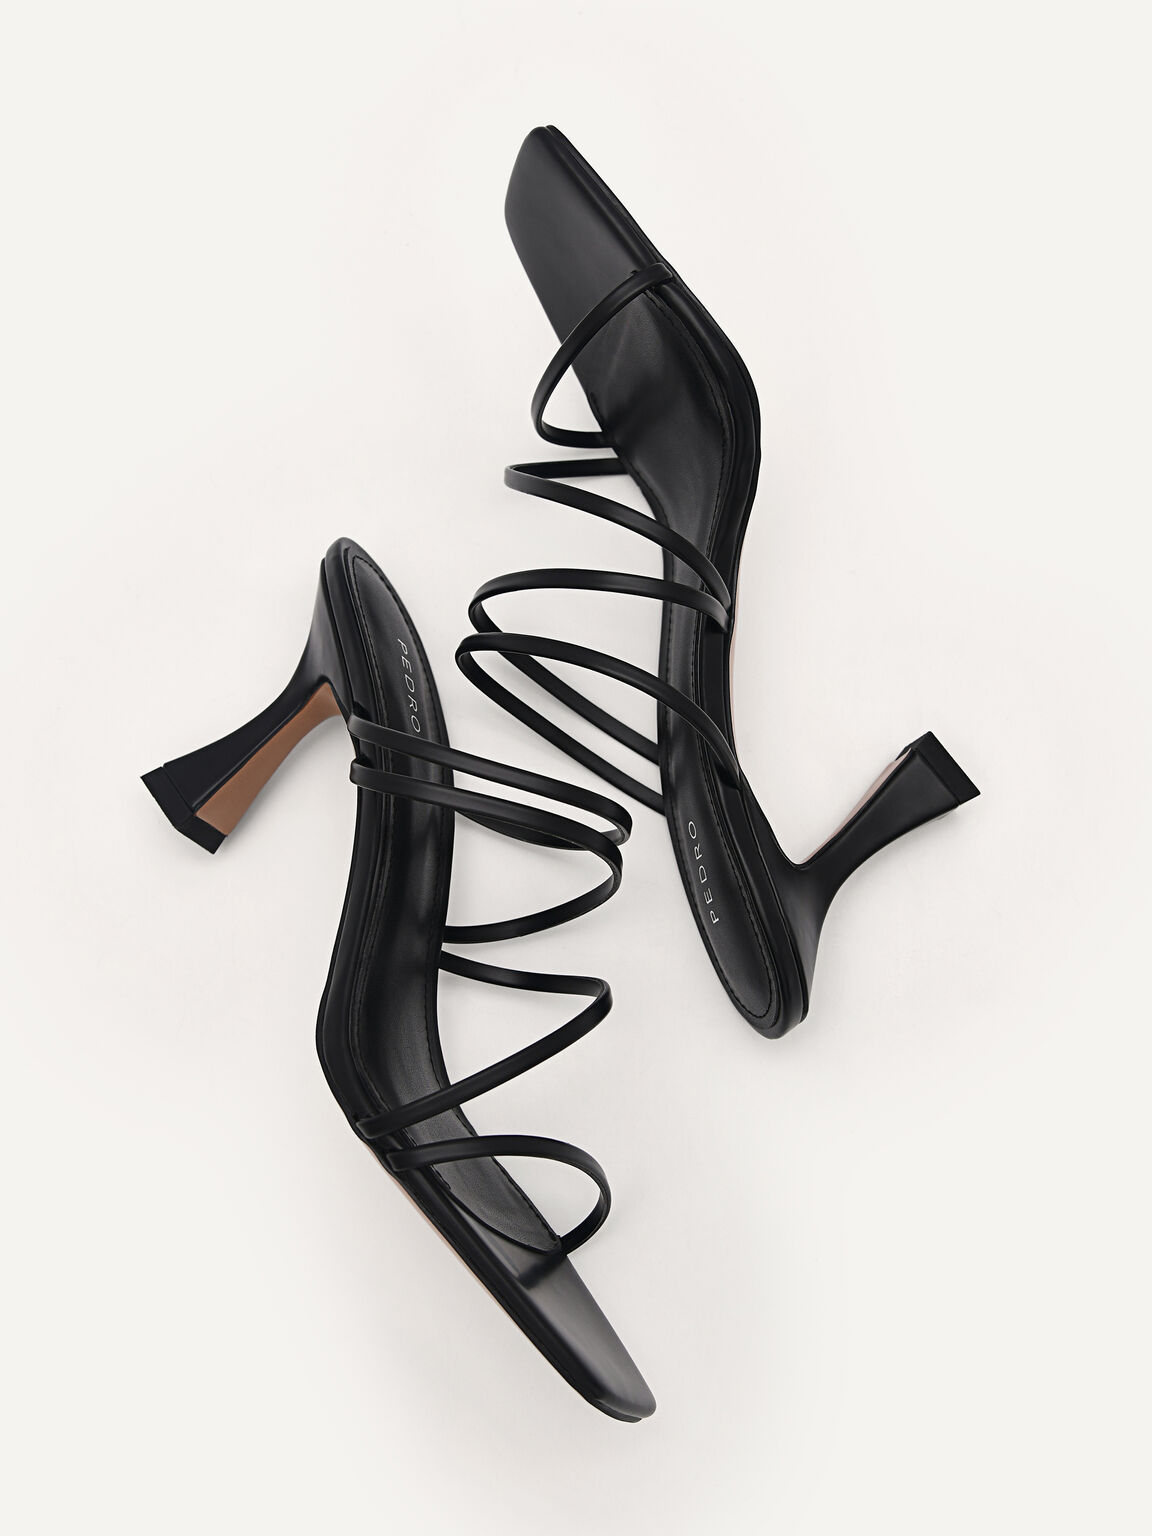 Strappy Heel Sandals - Black, Black, hi-res